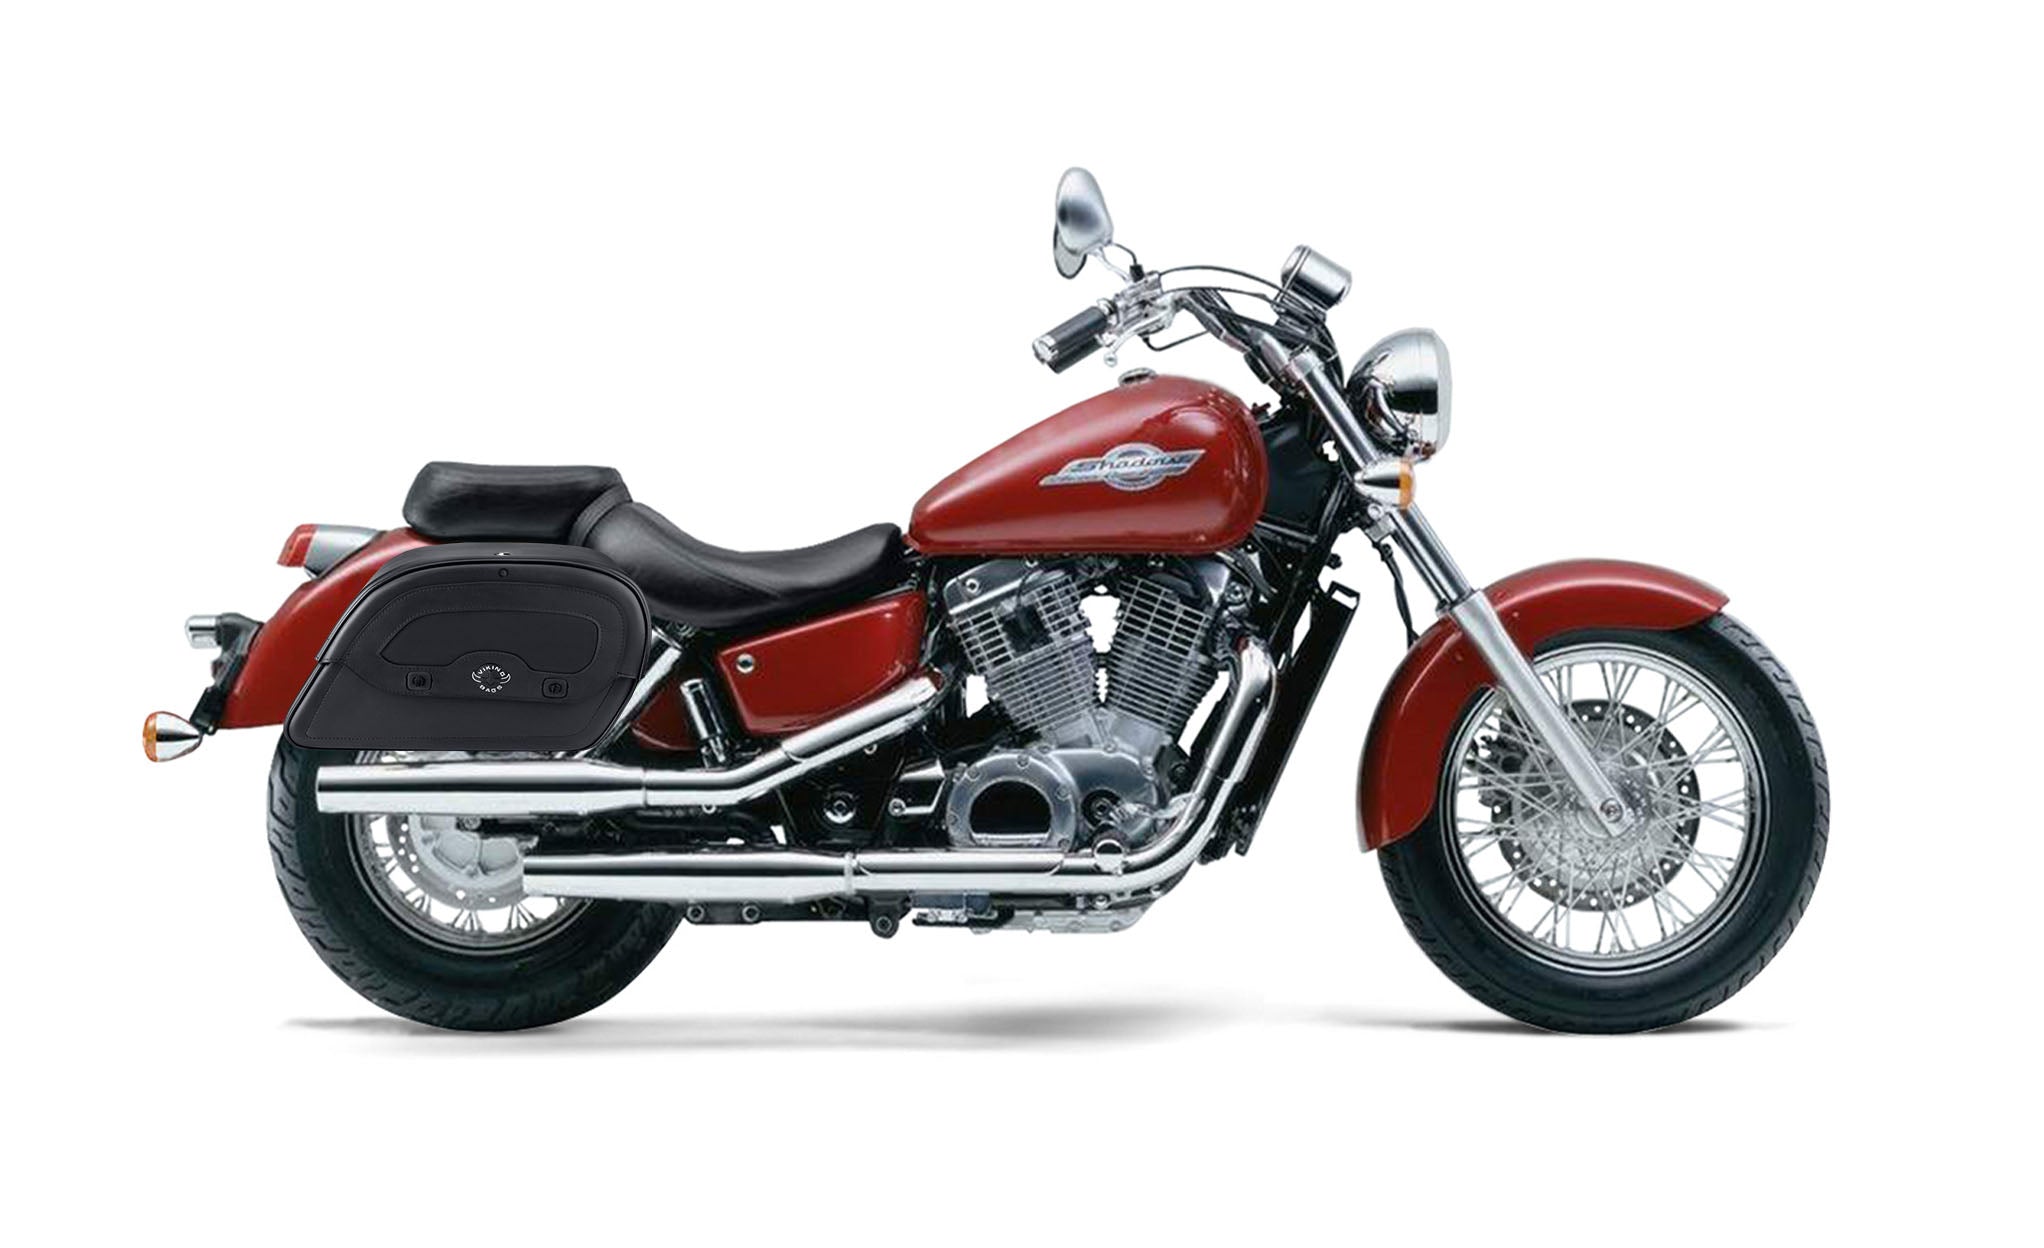 Viking Warrior Medium Honda Shadow 1100 Ace Leather Motorcycle Saddlebags on Bike Photo @expand